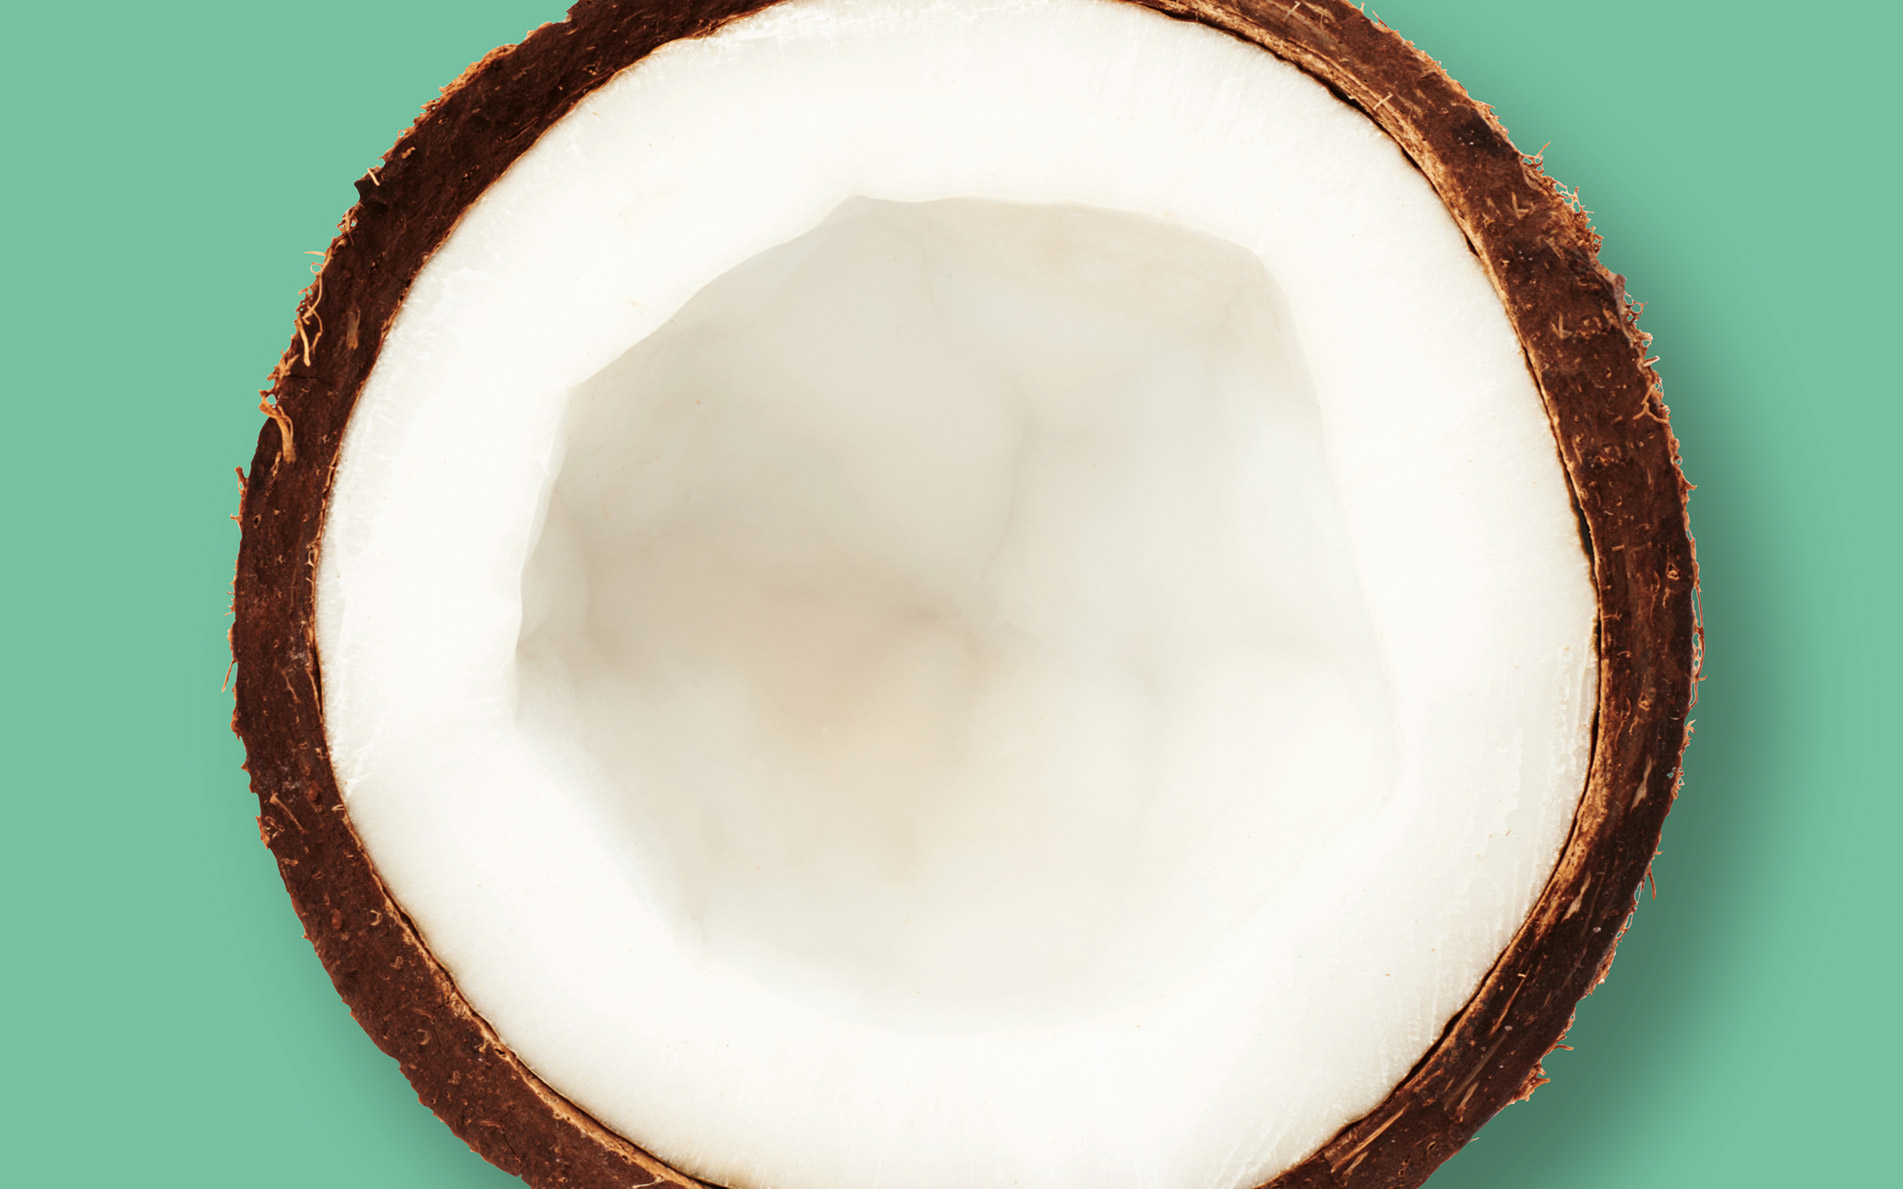 GOCO crunchy coconut bites illustration - Rylands Brand Design